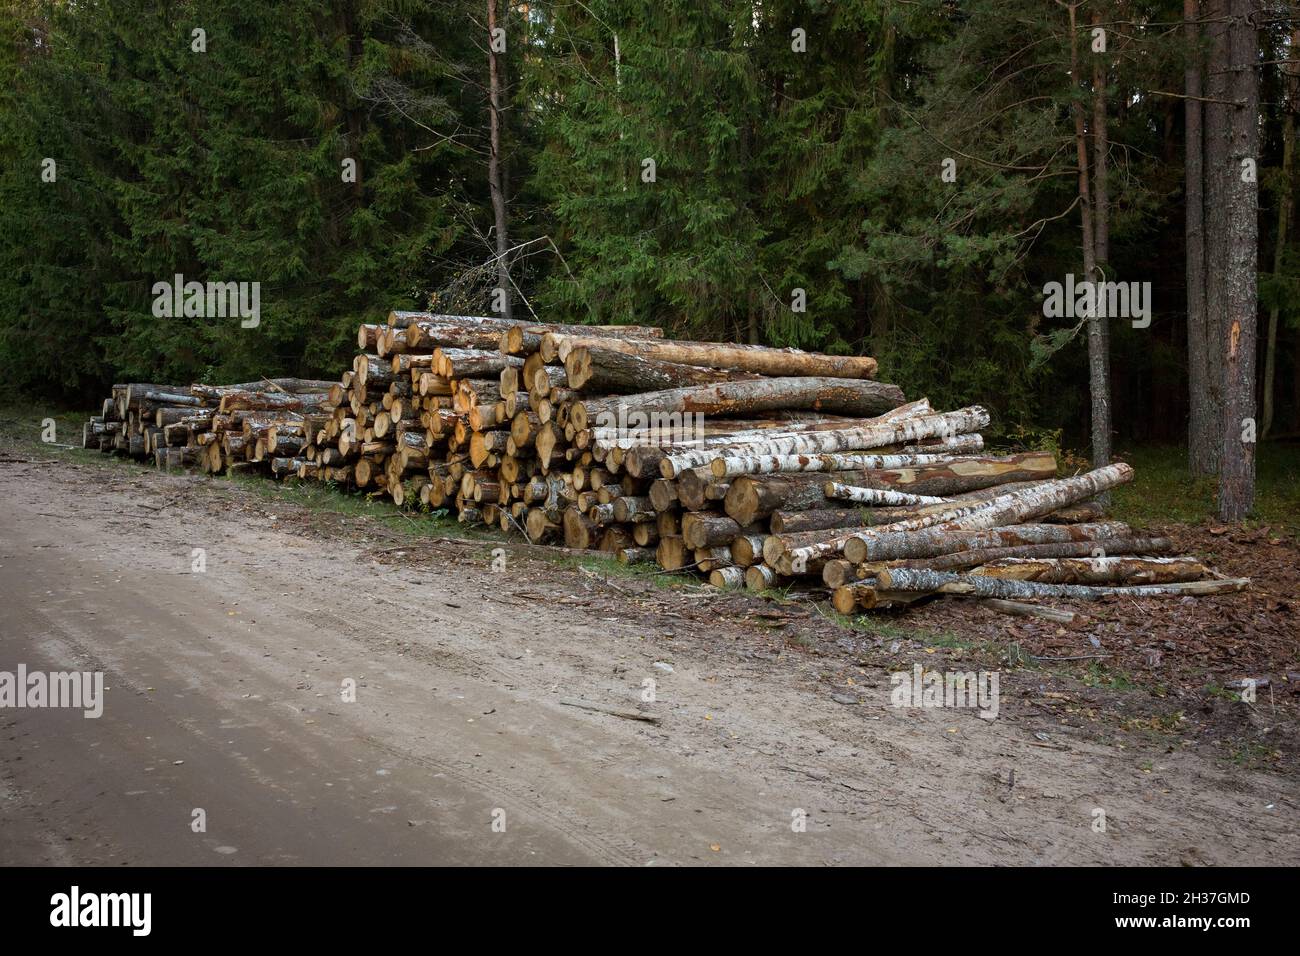 Holzstapel entlang der Forststraße. Waldkiefern und Fichten. Baumstämme Haufen, die Holzholzindustrie. Stockfoto